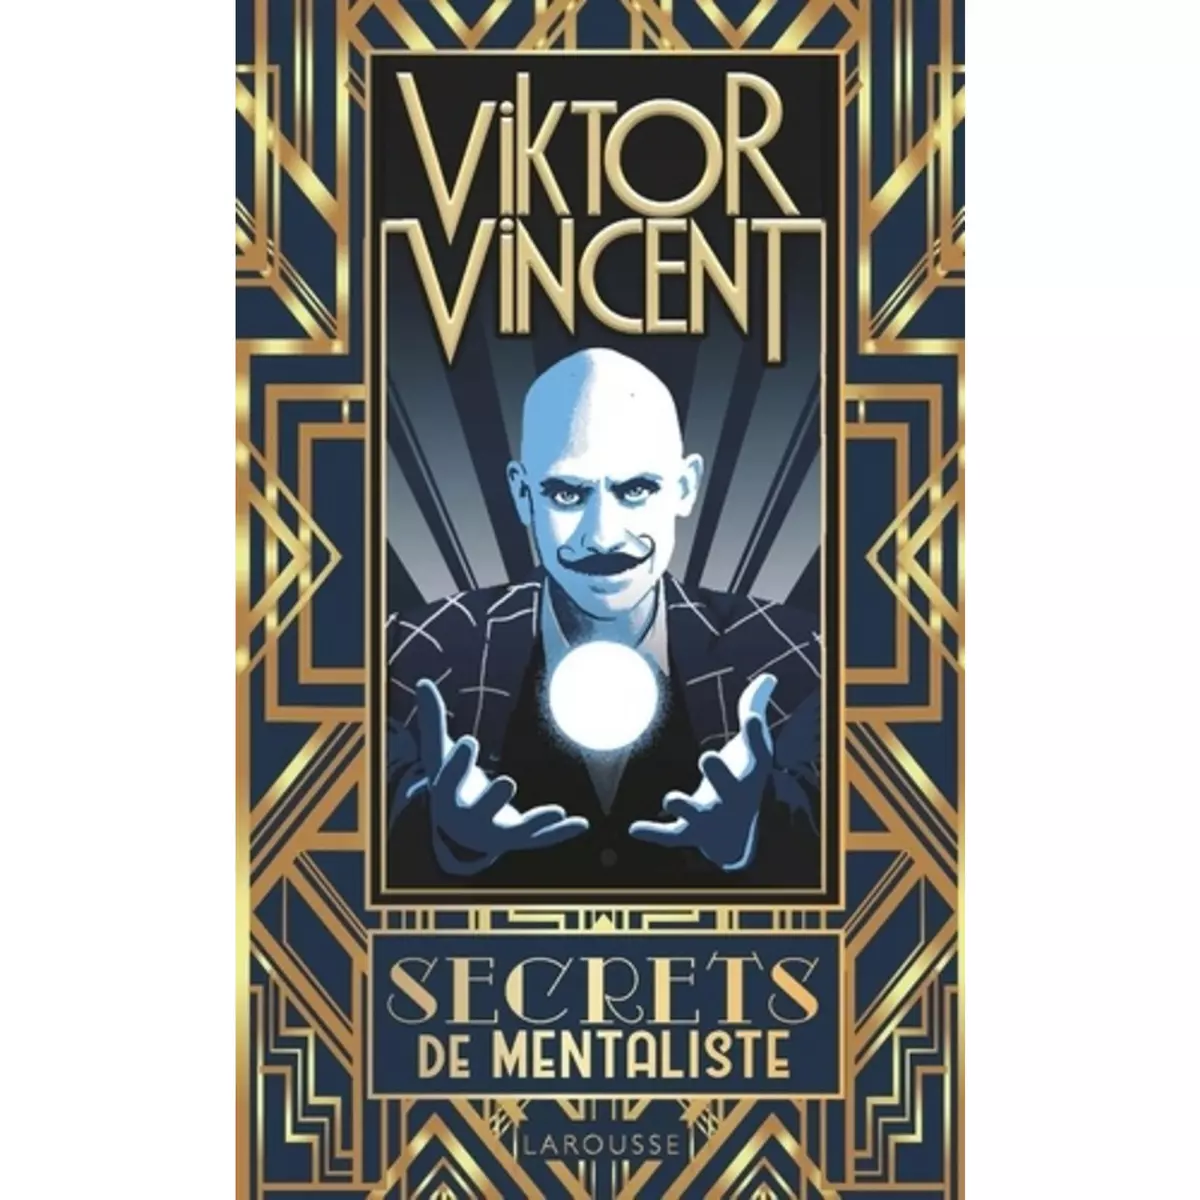  SECRETS DE MENTALISTE, Vincent Viktor